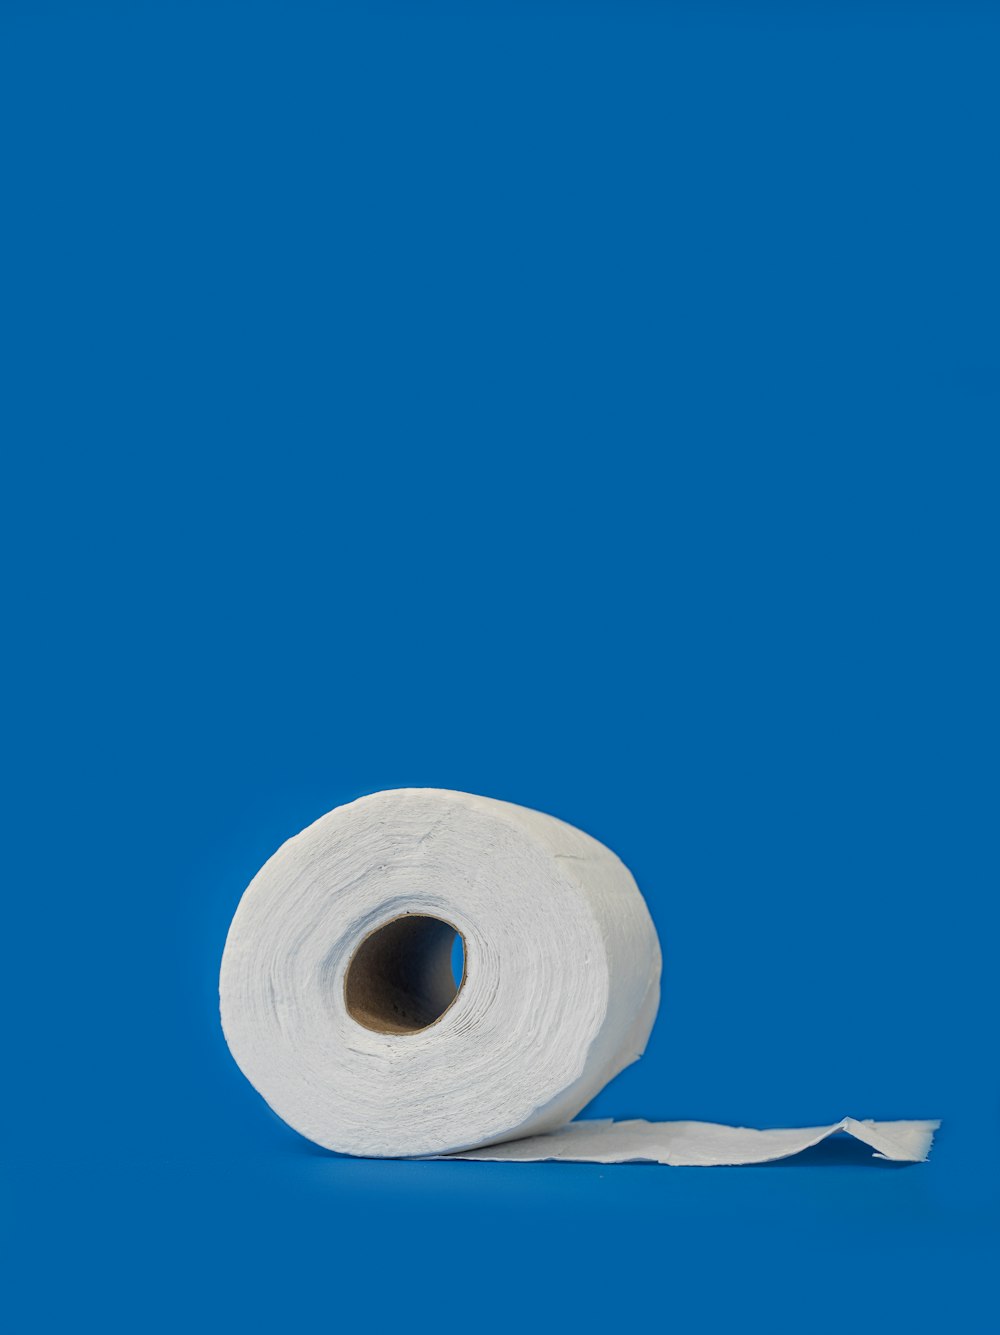 white tissue roll on white textile